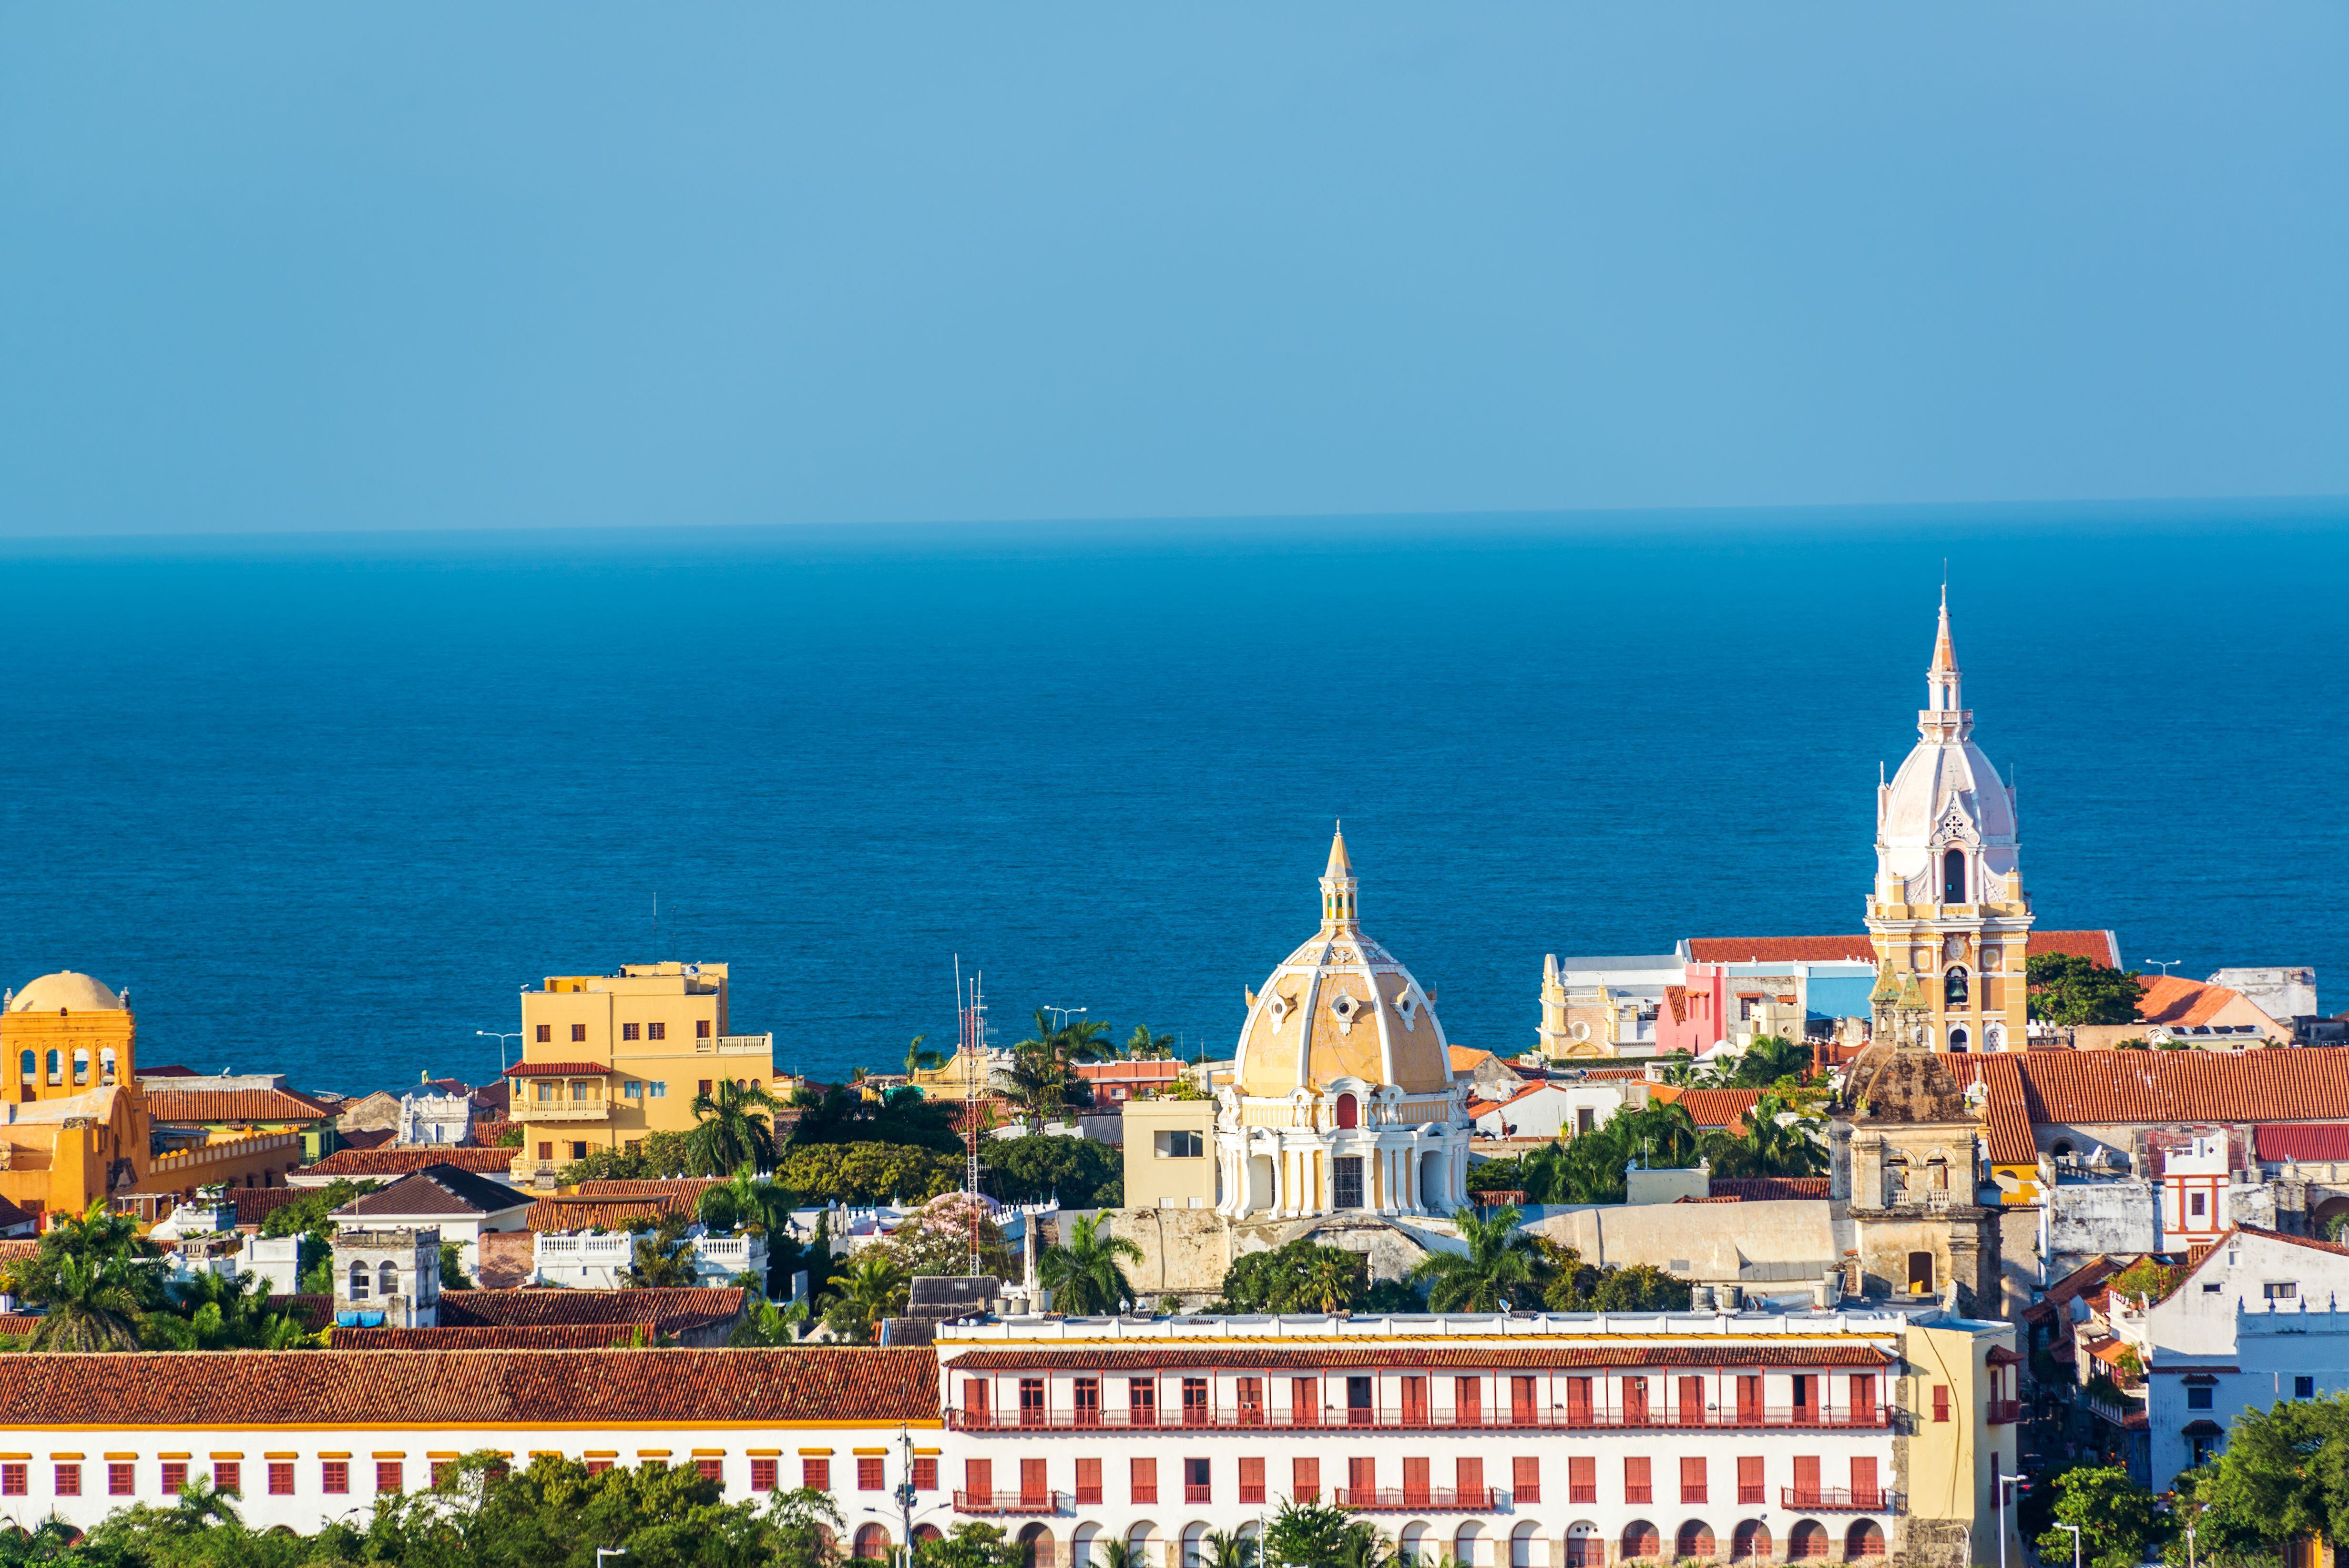 Las ciudades al pie del mar Caribe son los favoritos para gozar en el exterior, como Cartagena (foto), que ofrece exuberantes playas y paseos históricos.